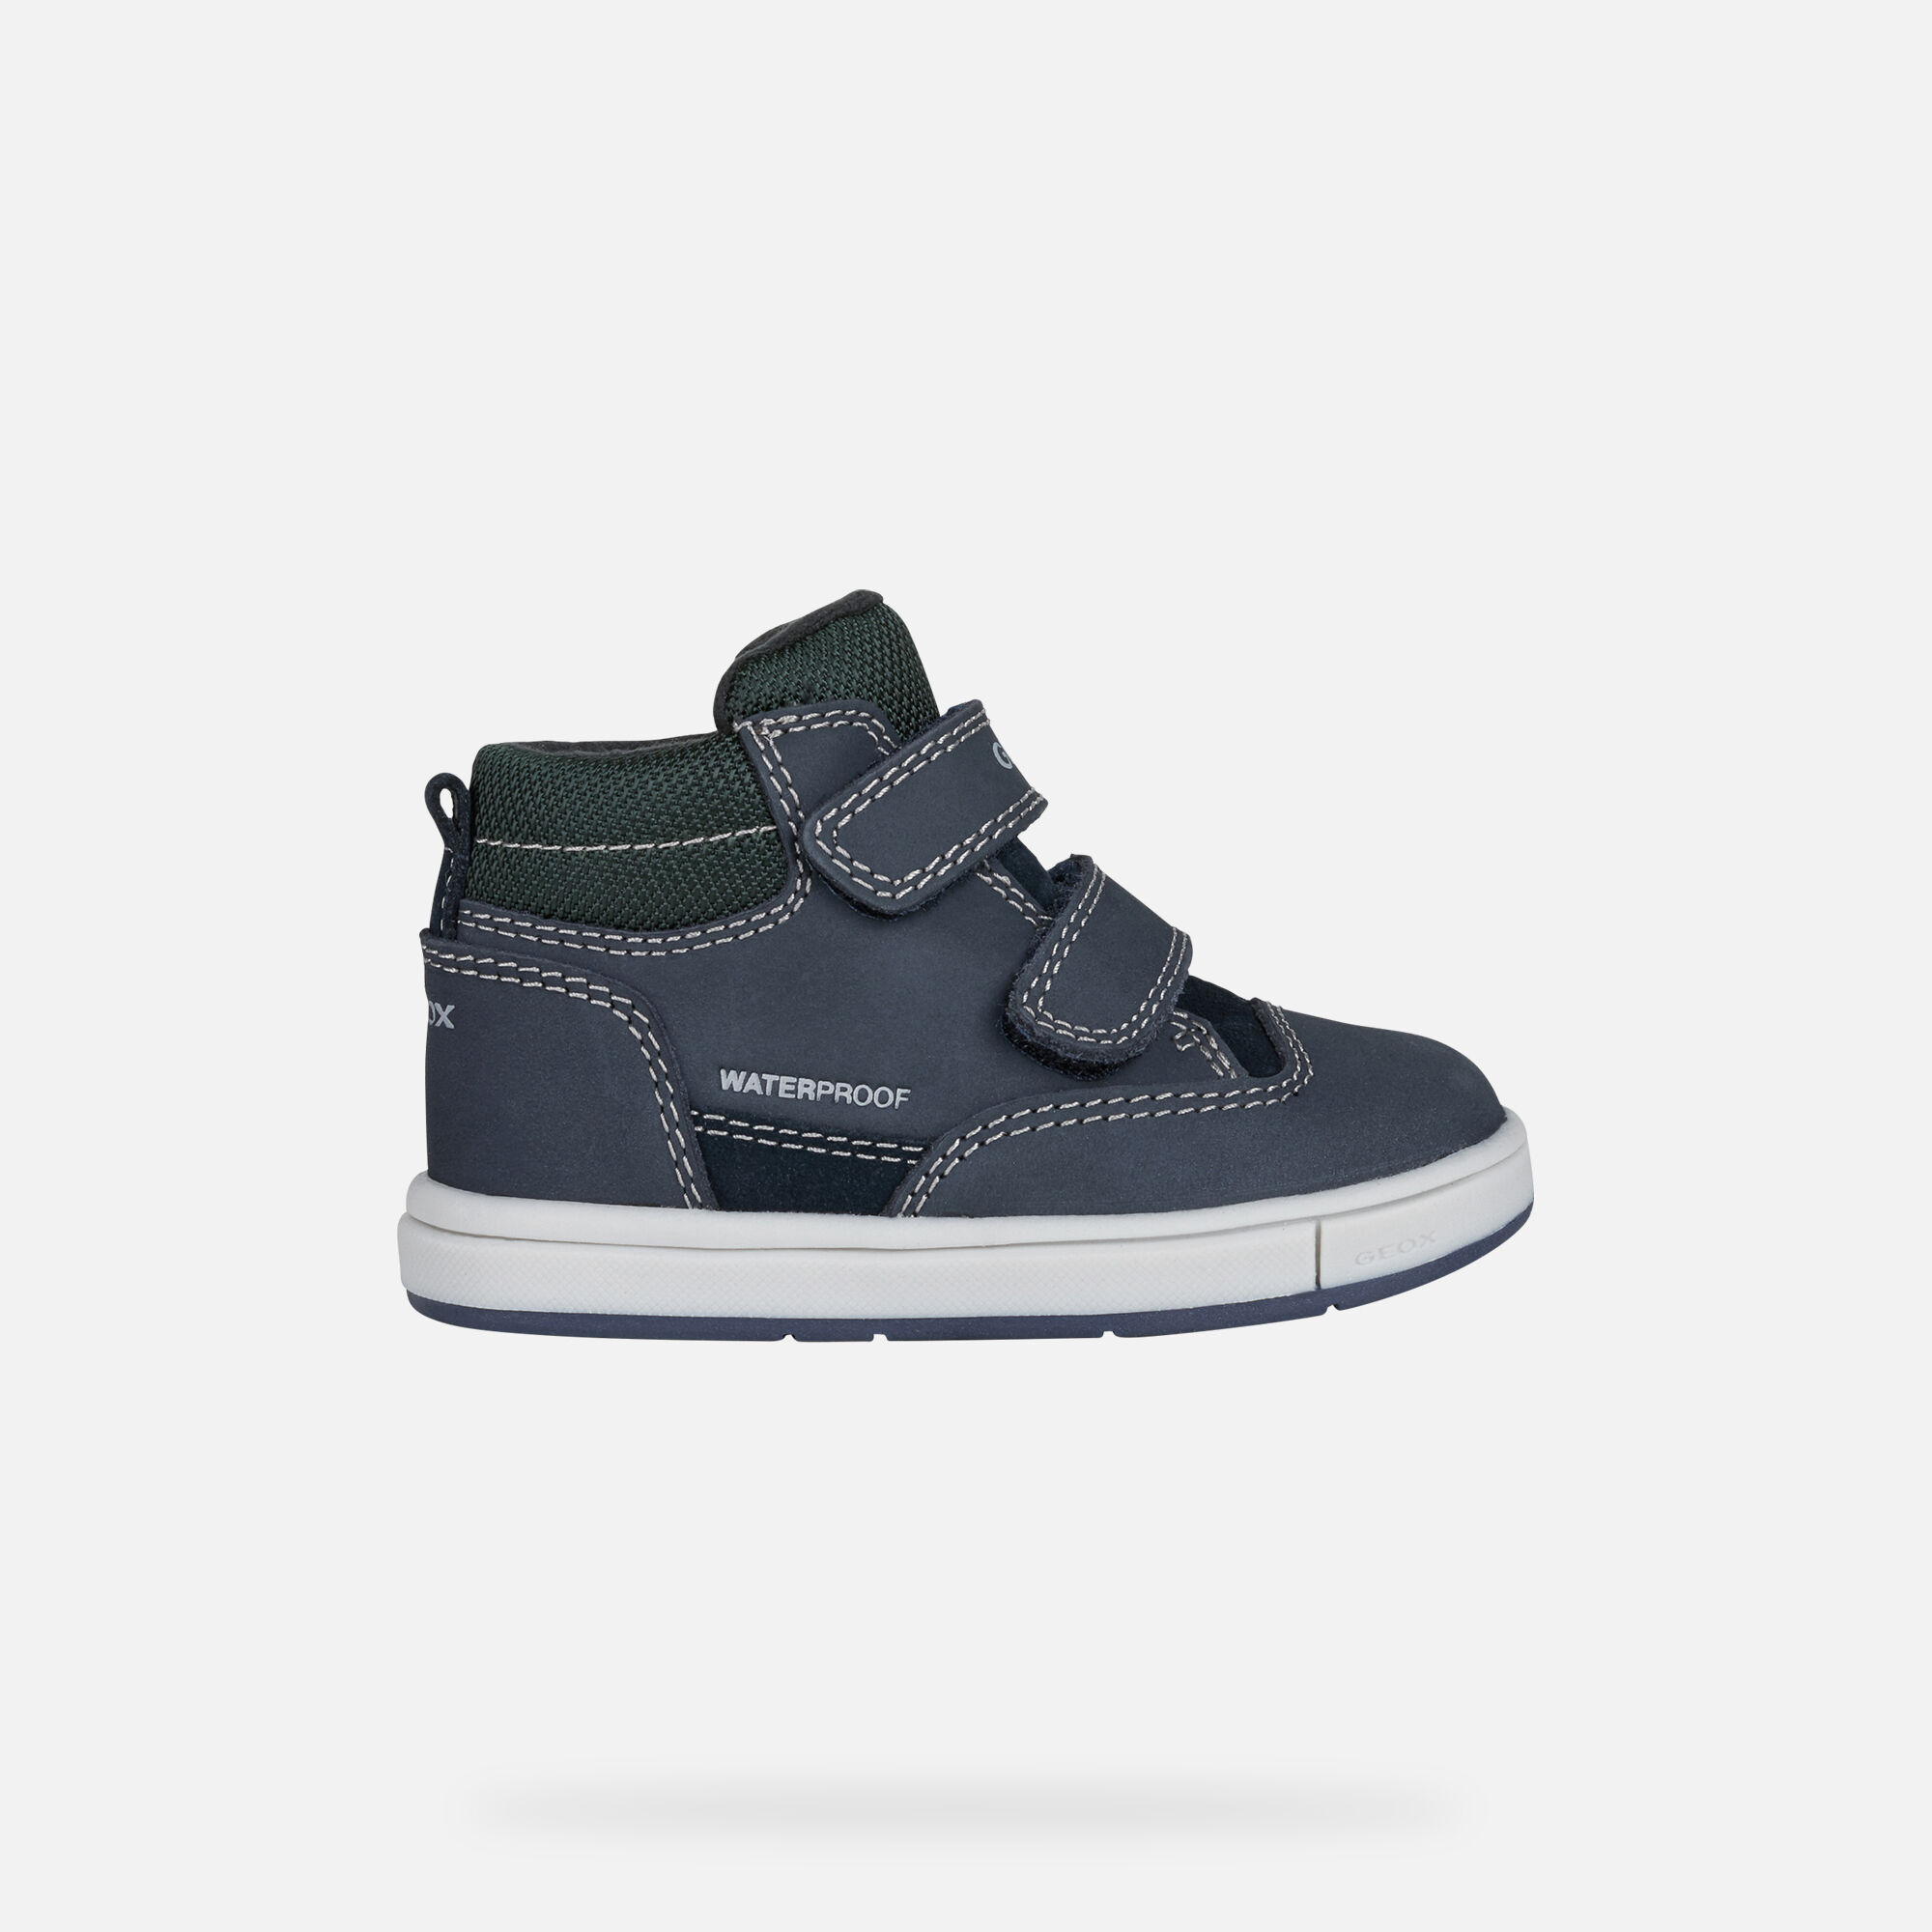 Geox Baby Boy's B Trottola Sneaker